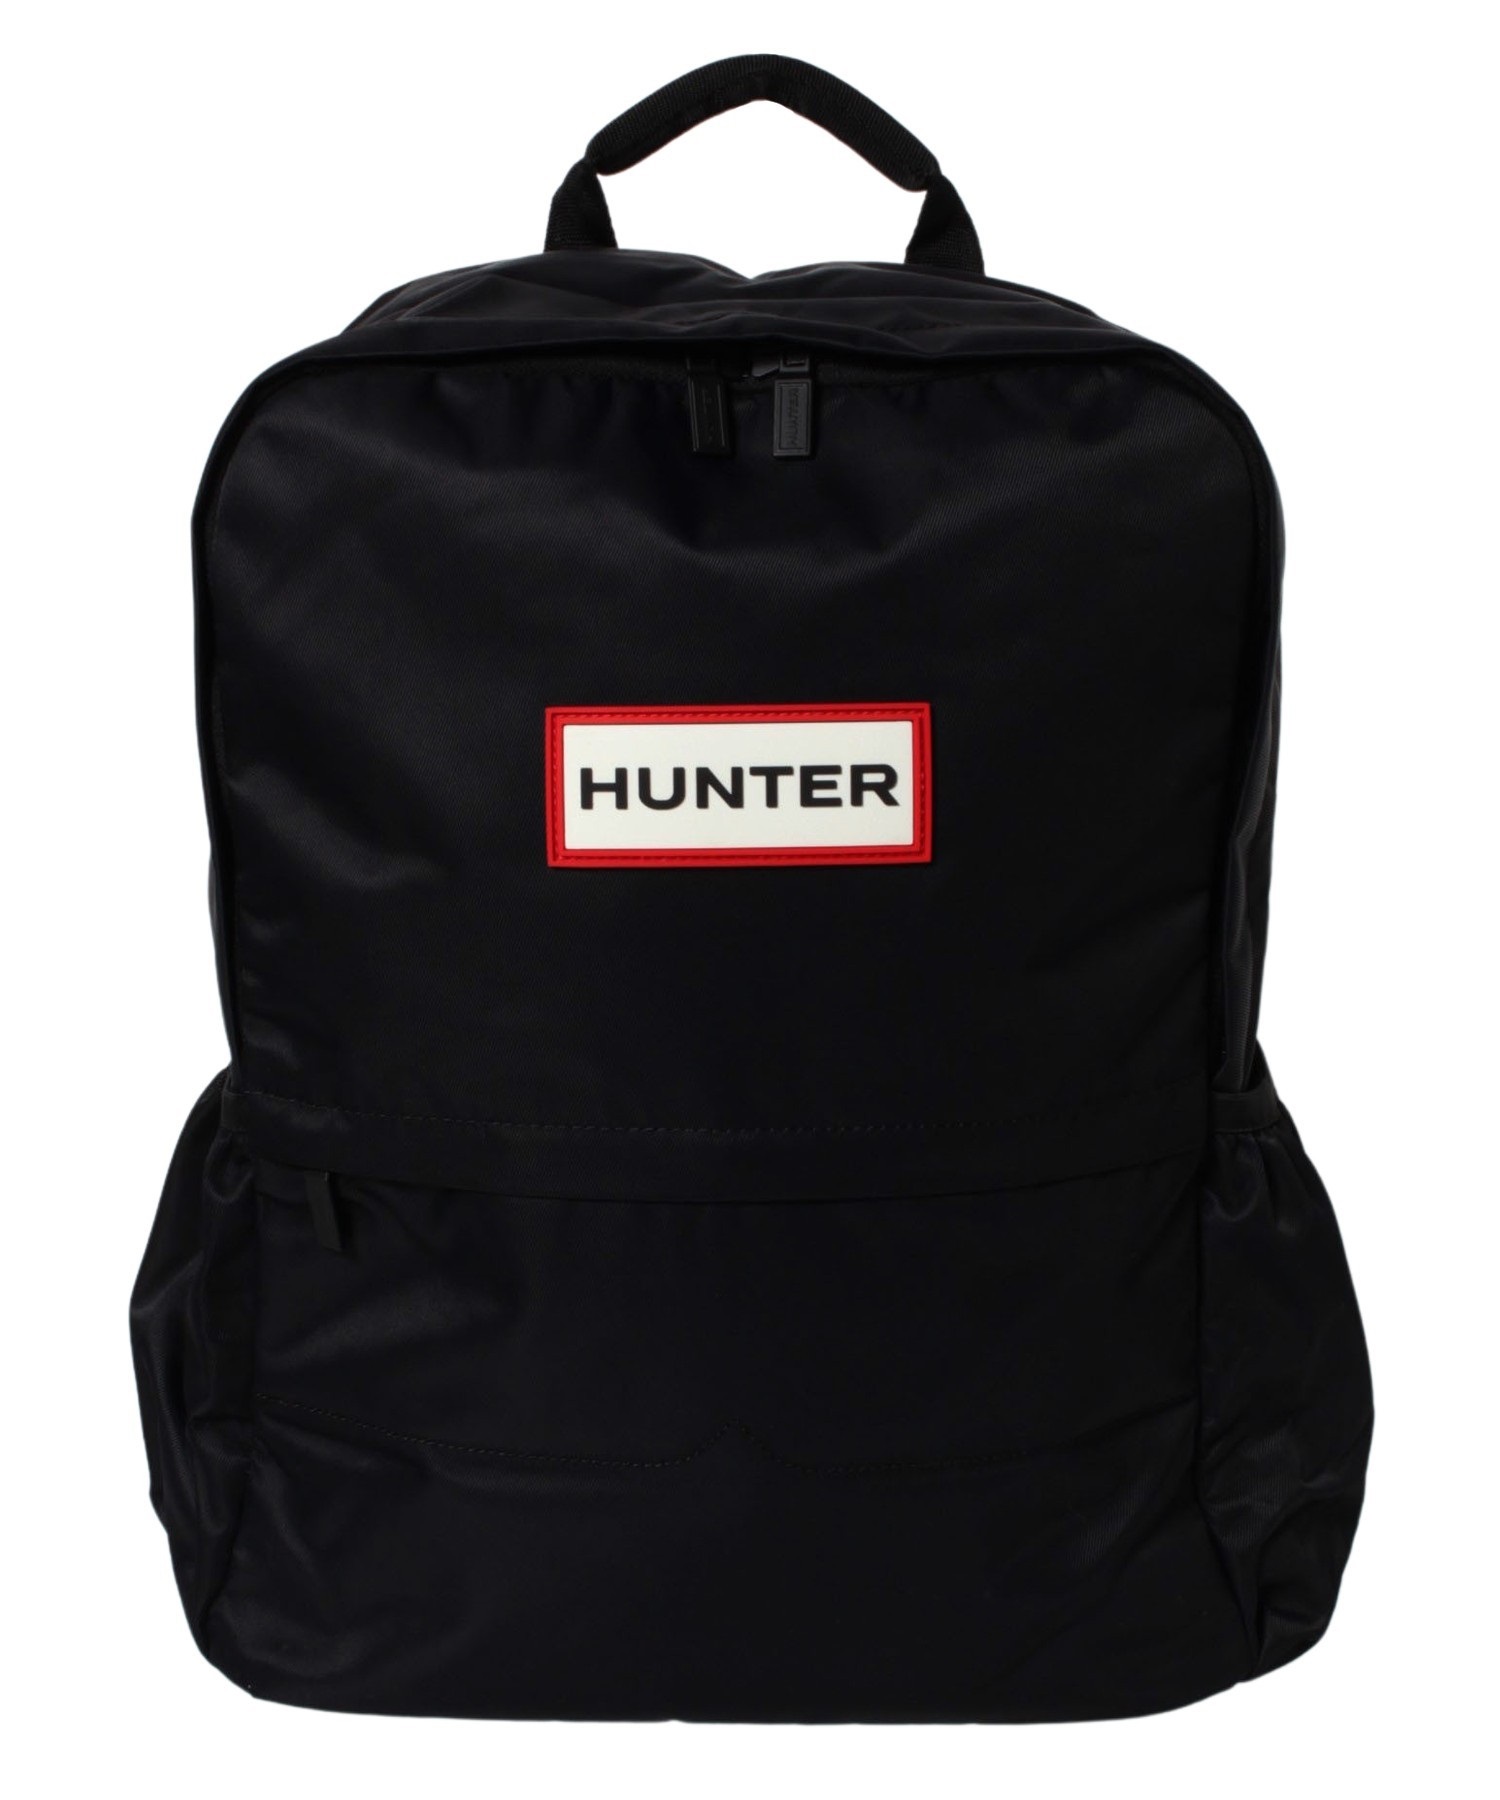 HUNTER/ハンター UBB6028KBM メンズ バッグ 鞄 リュック リュック 